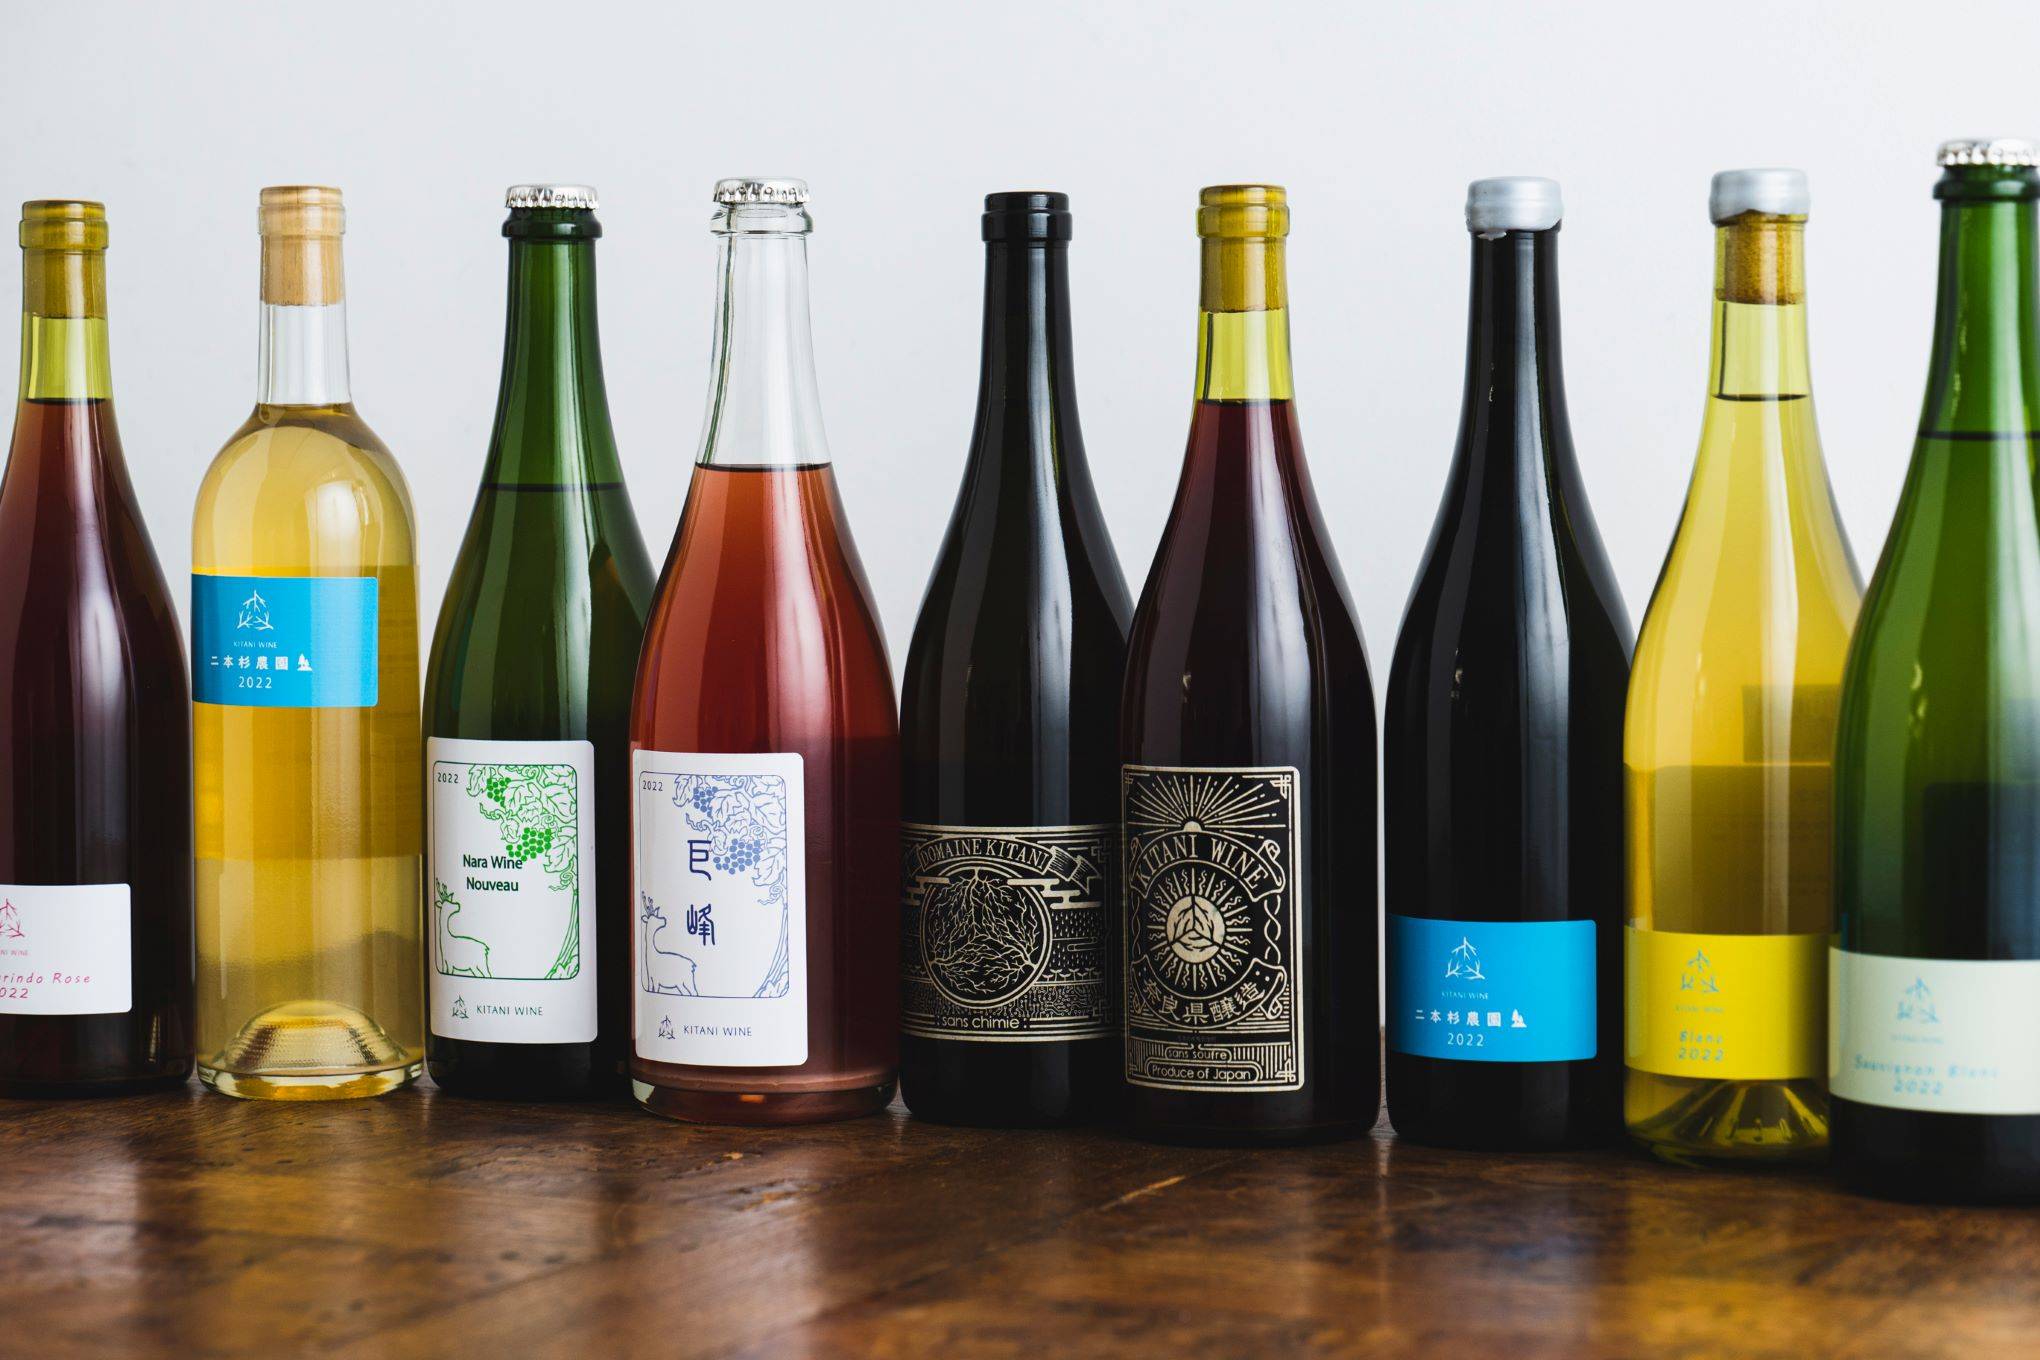 奈良県内でワイン用葡萄を生産、純奈良県産ワインを生み出すことを目指して。県内初のワイナリーとして、2022年に醸造スタート。